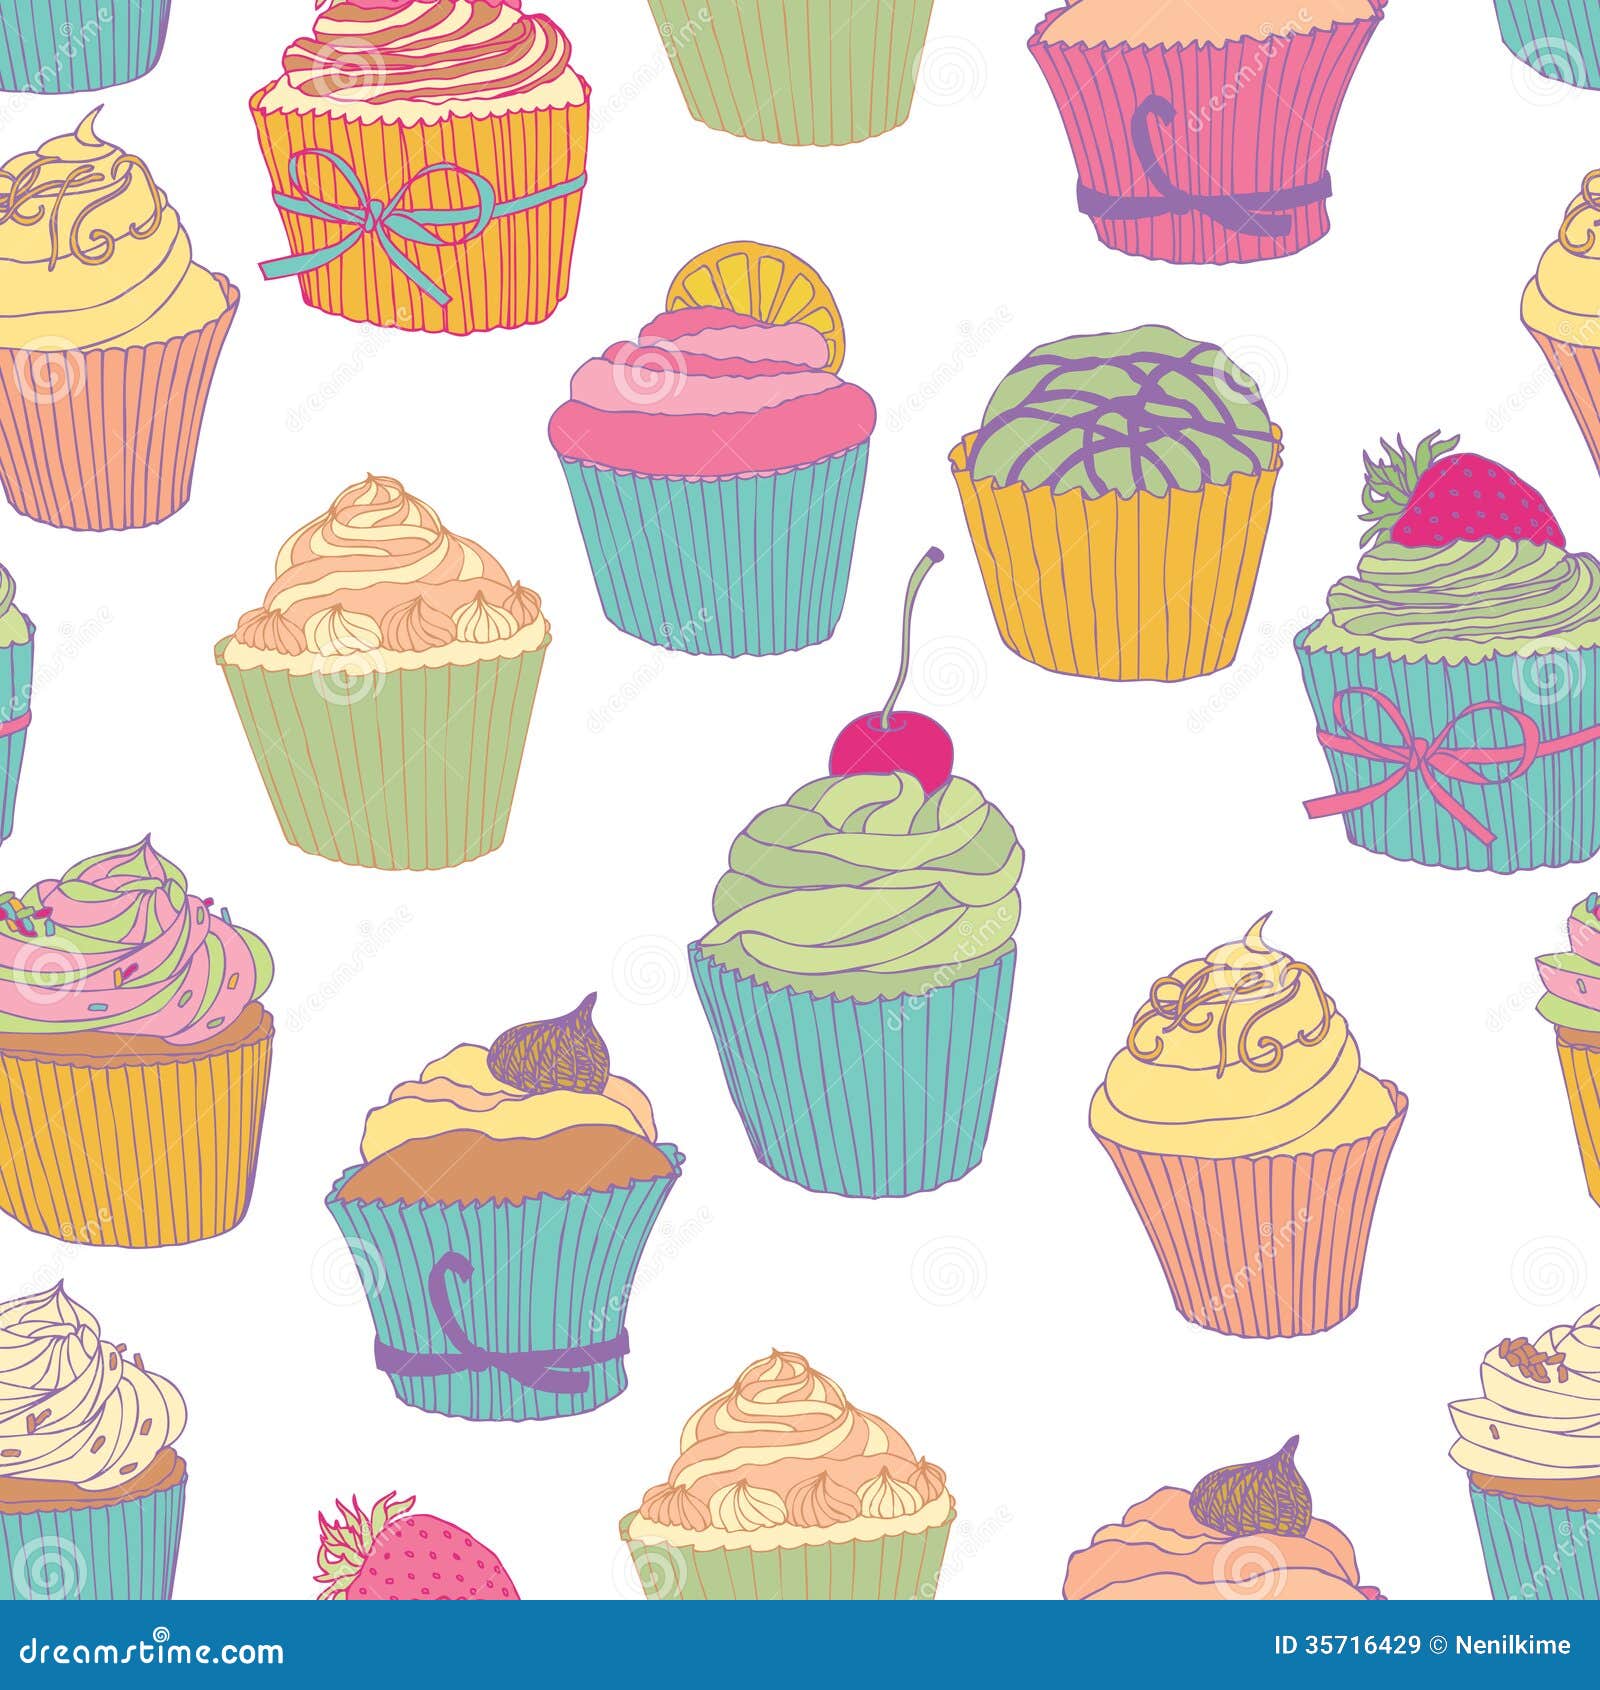 cupcake-pattern-royalty-free-stock-images-image-35716429